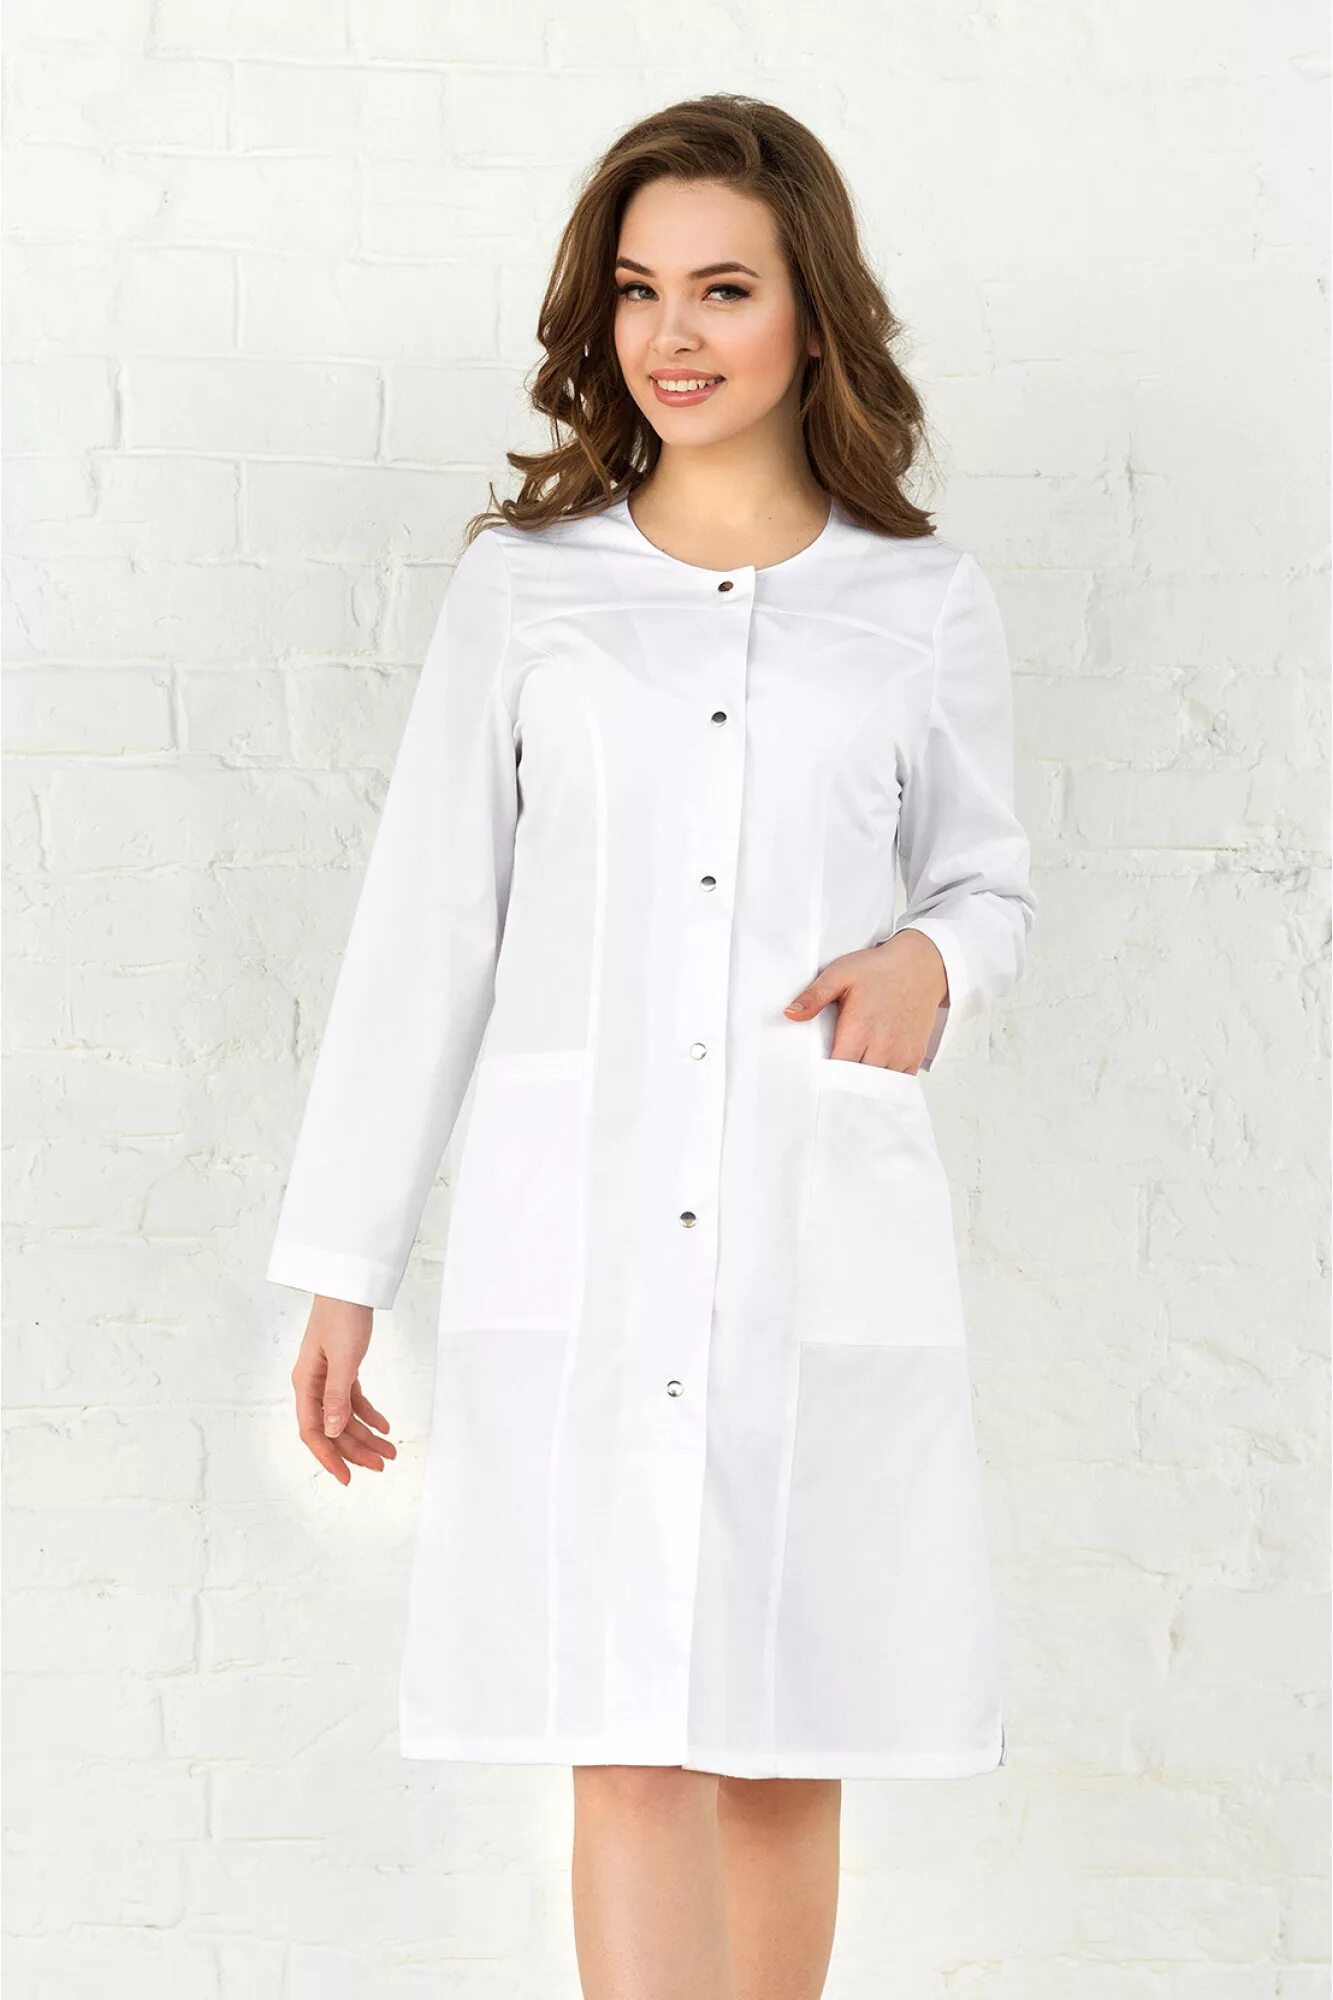 Медицинский халат-платье Медэлит. Халат белый медицинский вильдберис. Халат валберис медицинский 44 размер. Халат медицинский белый.